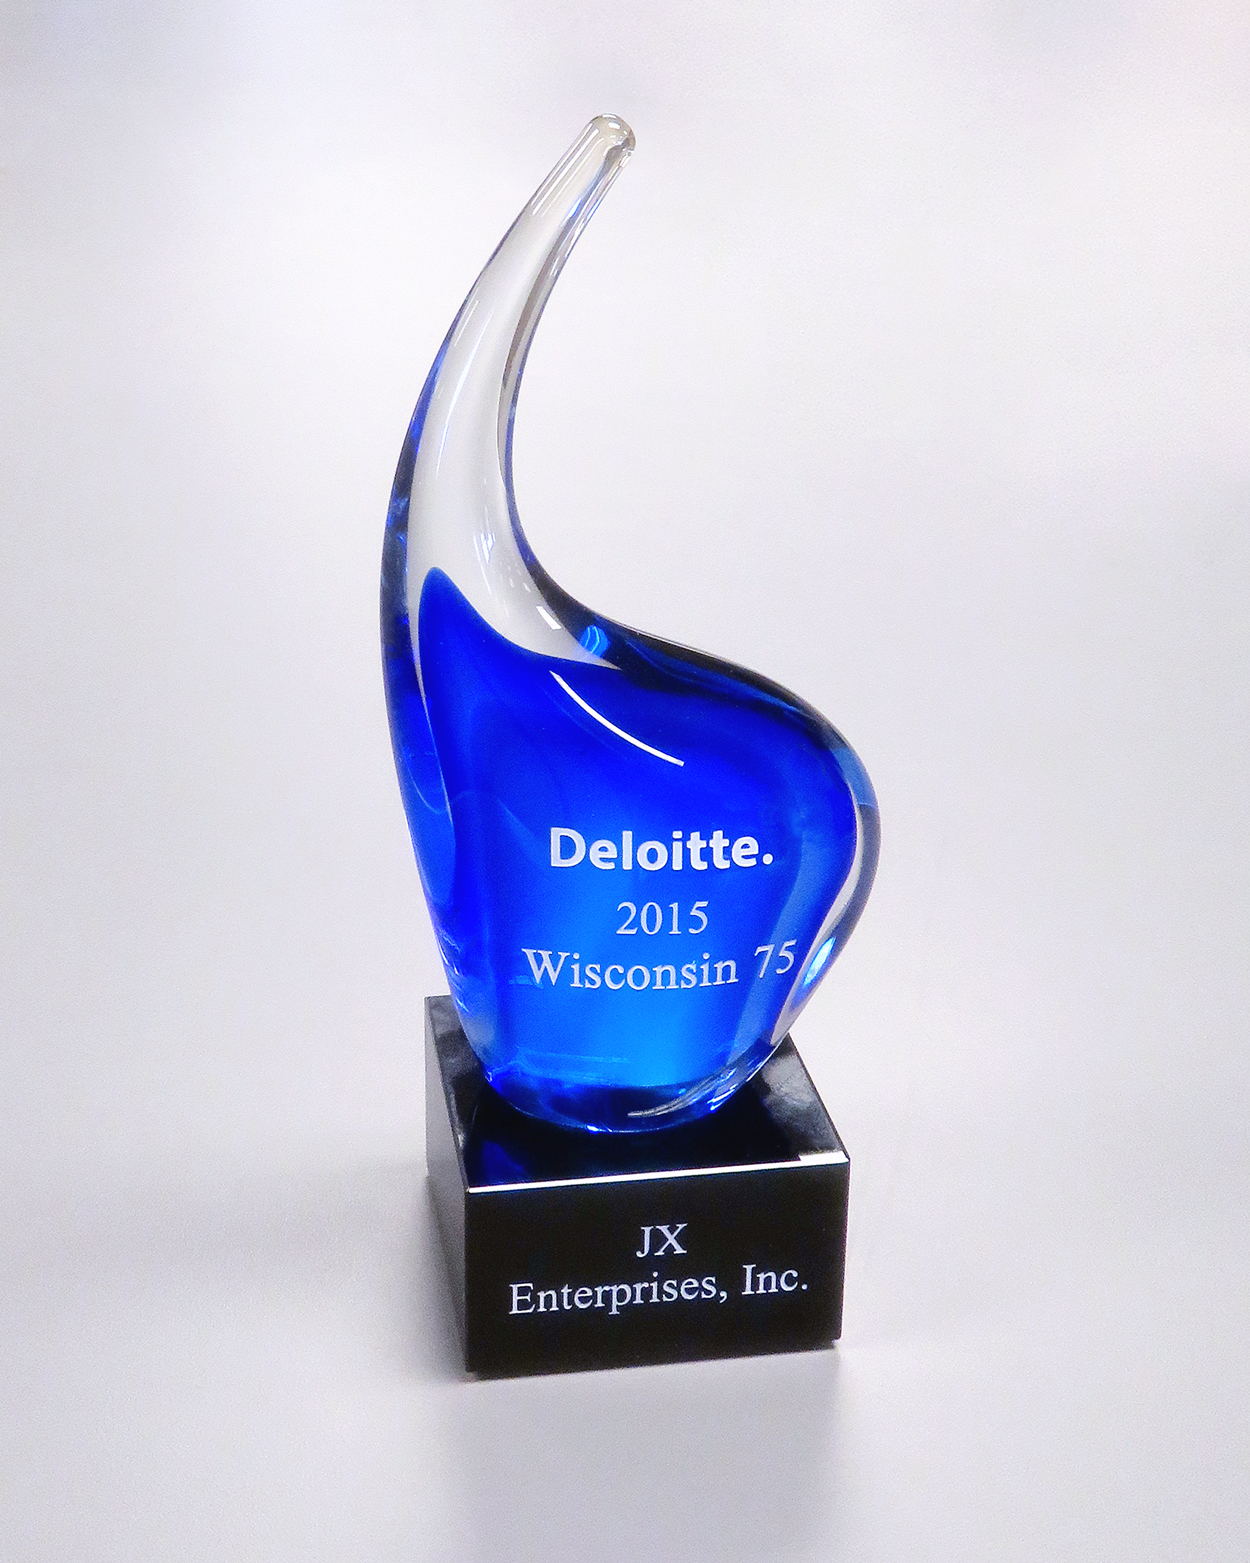 The 2015 Deloitte Wisconsin 75 Award